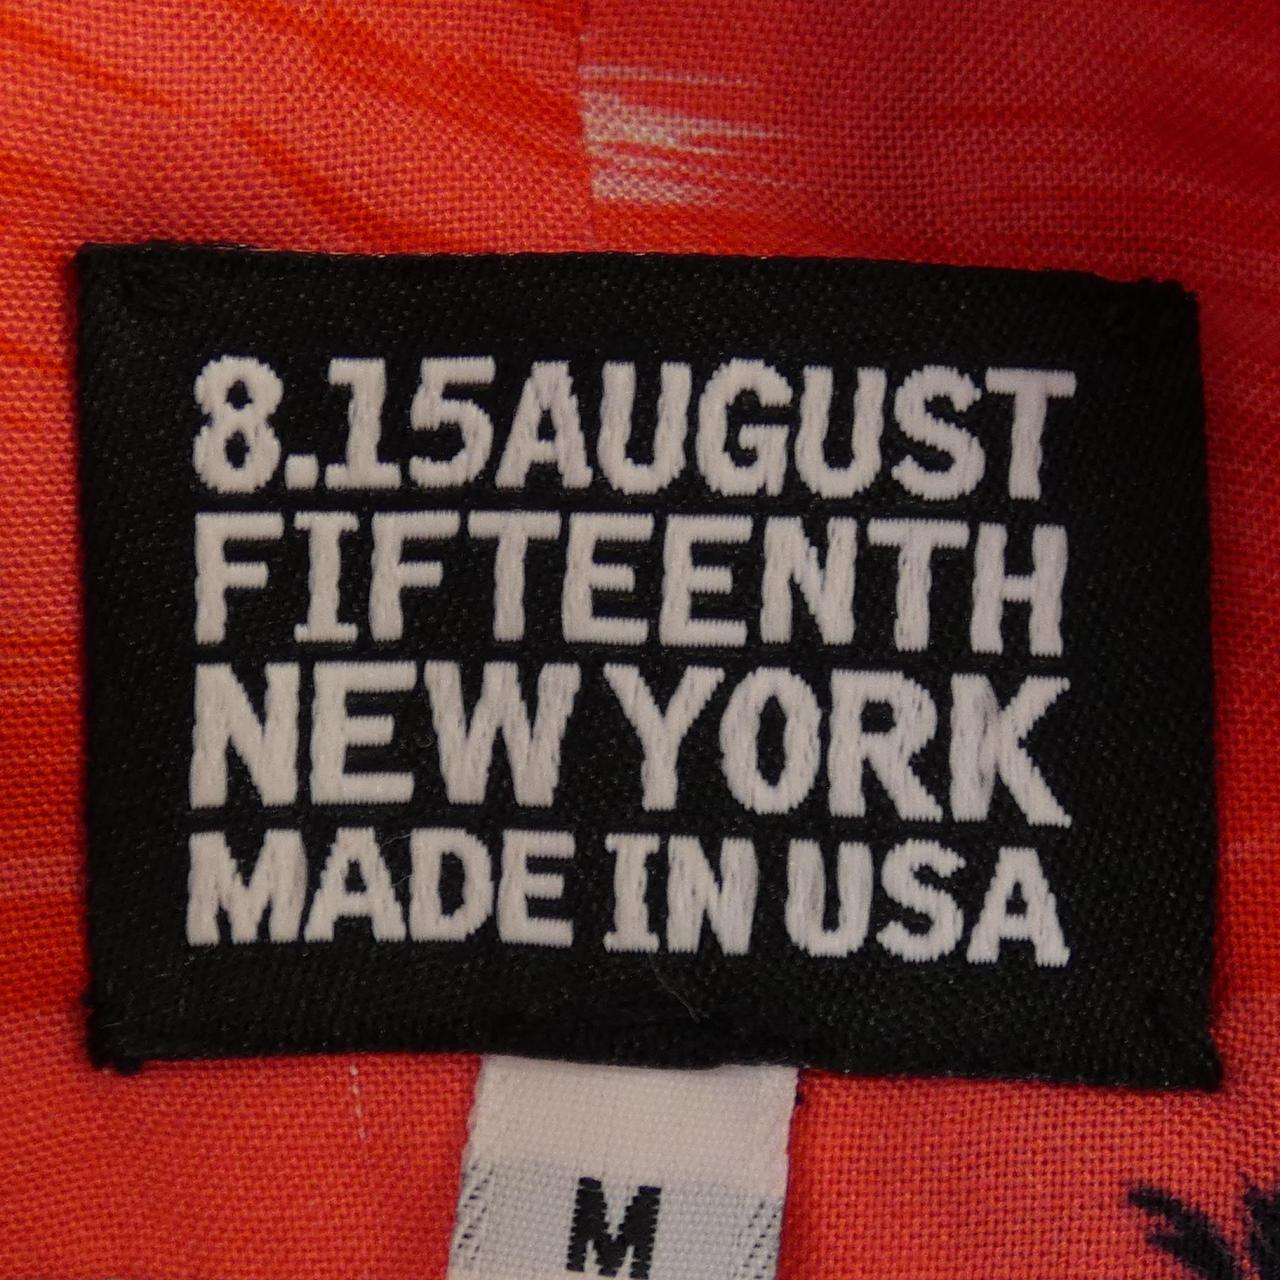 August Fifteenth 8.15AUGUST FIFTEENTH Shirt